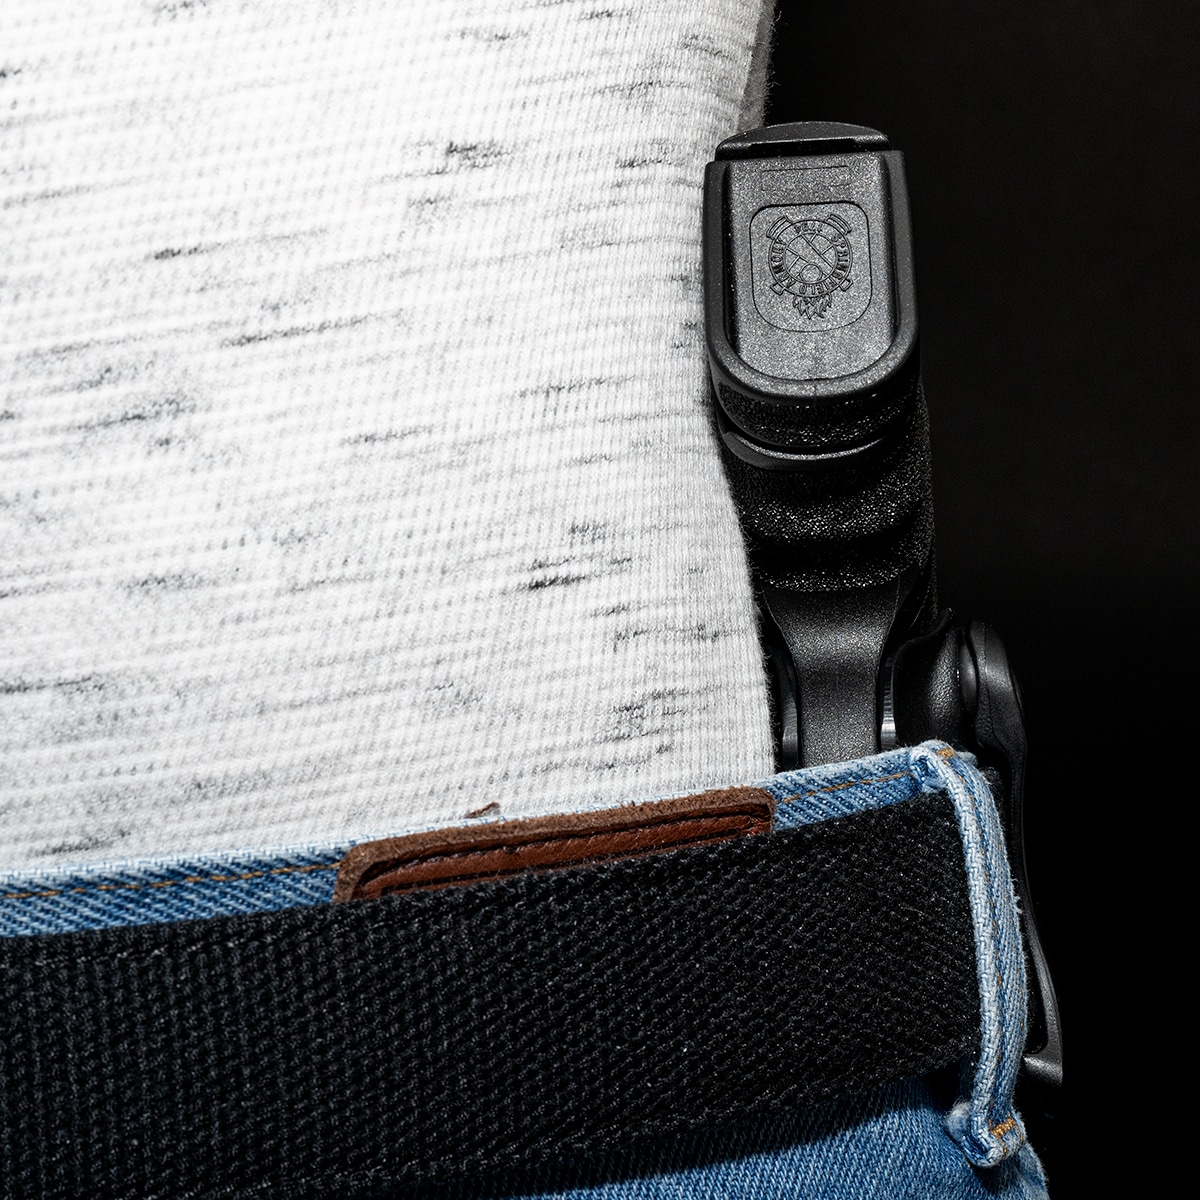 Blade-Tech Nano concealment IWB holster worn on a belt